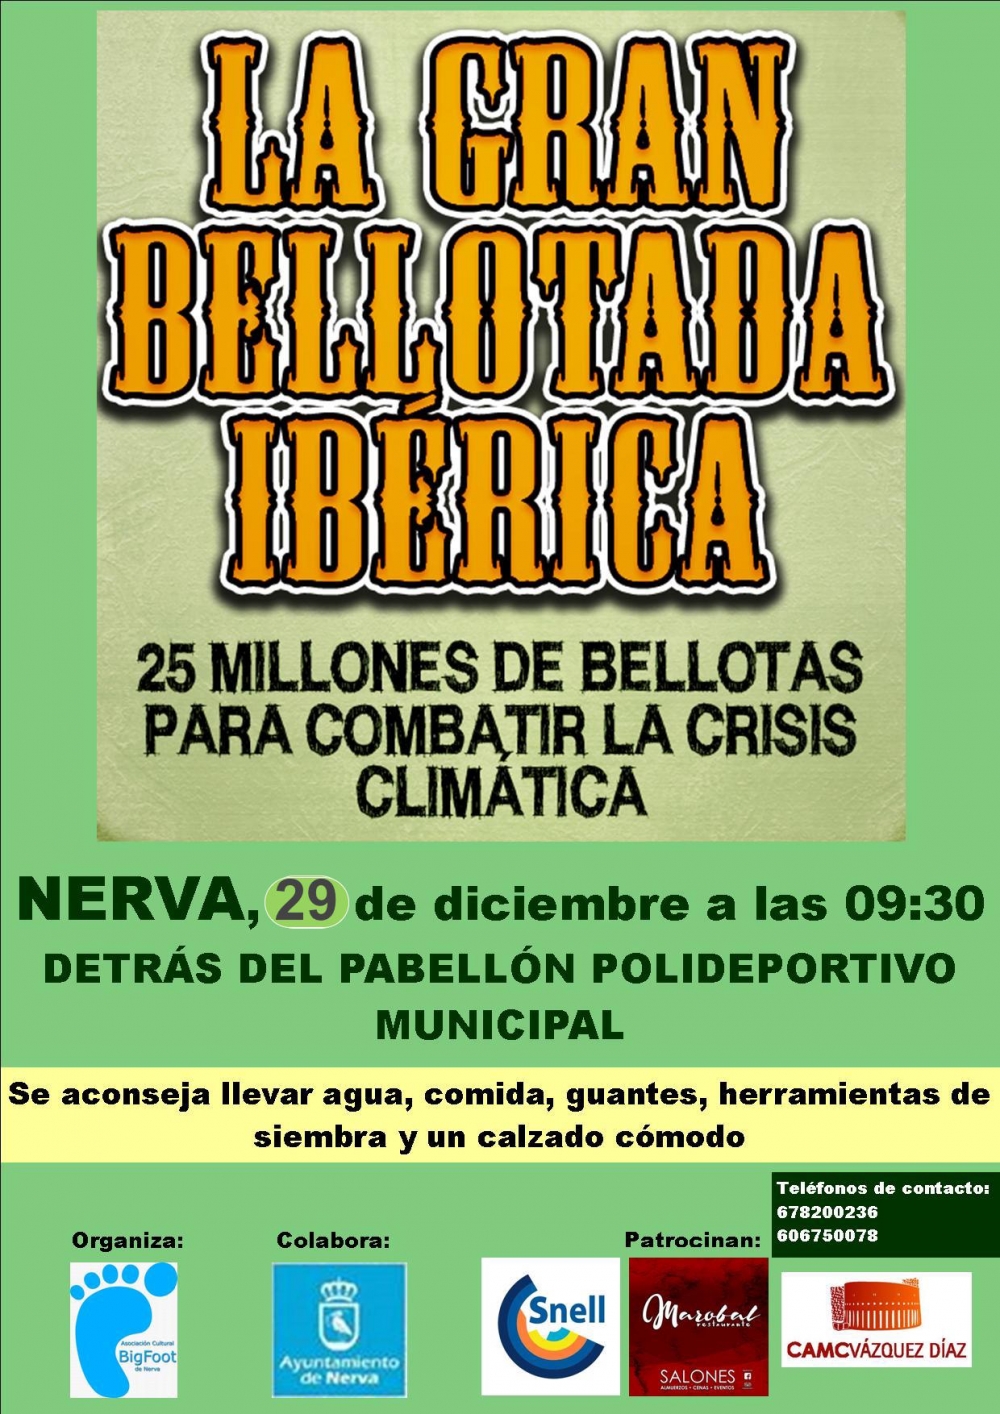 La Gran Bellotada Ibérica